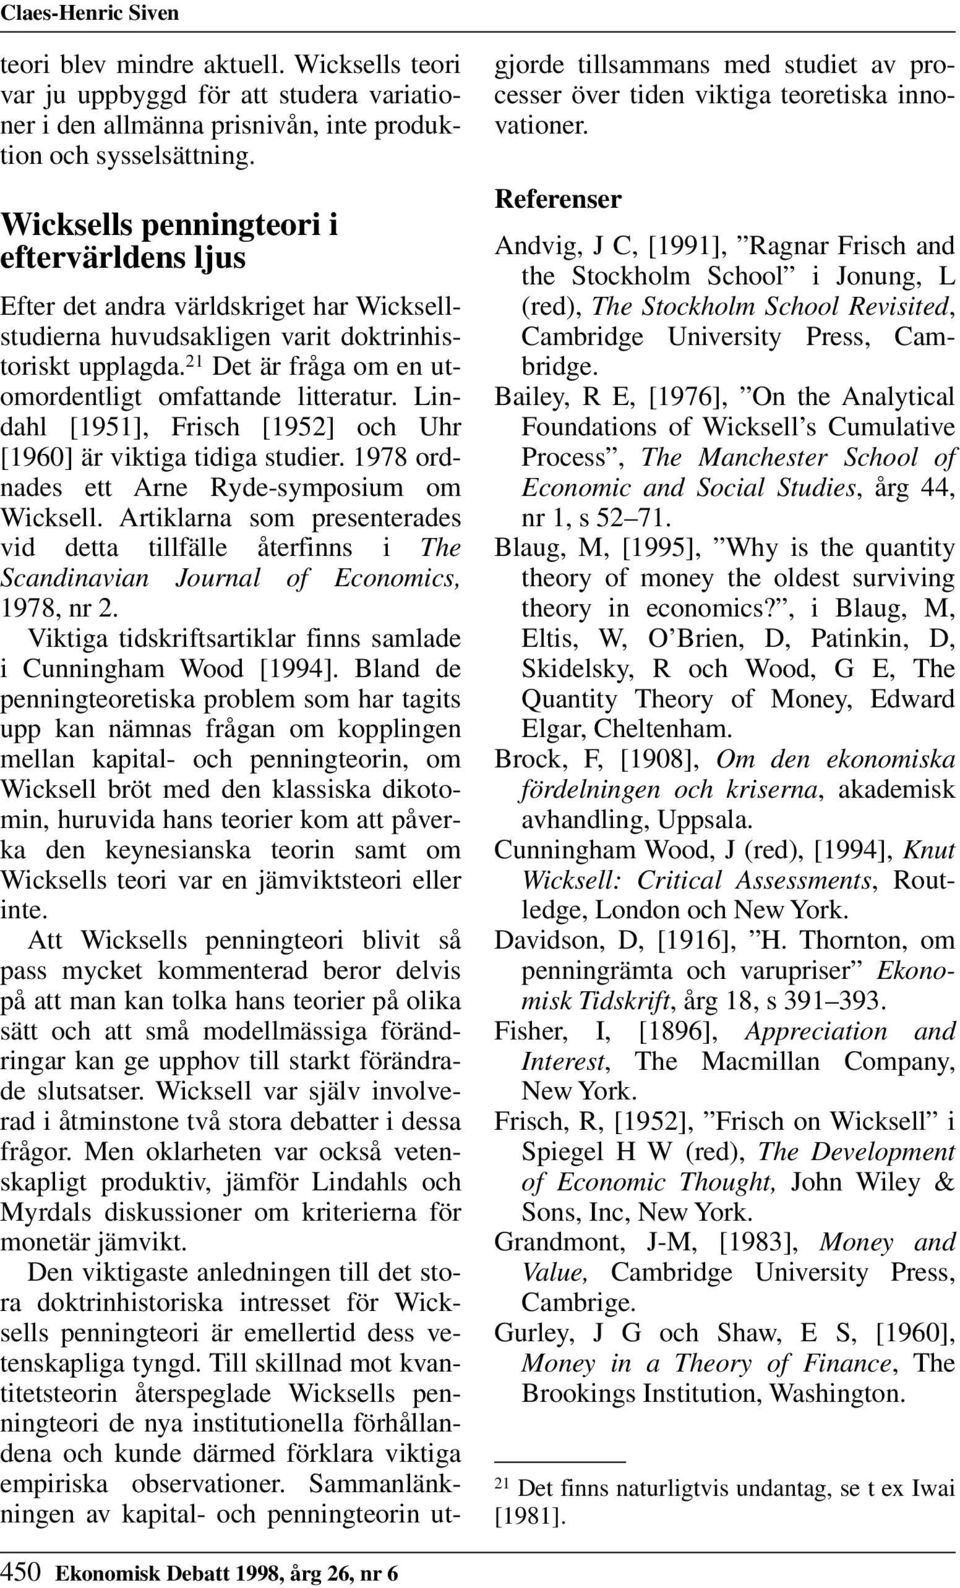 21 Det är fråga om en utomordentligt omfattande litteratur. Lindahl [1951], Frisch [1952] och Uhr [1960] är viktiga tidiga studier. 1978 ordnades ett Arne Ryde-symposium om Wicksell.